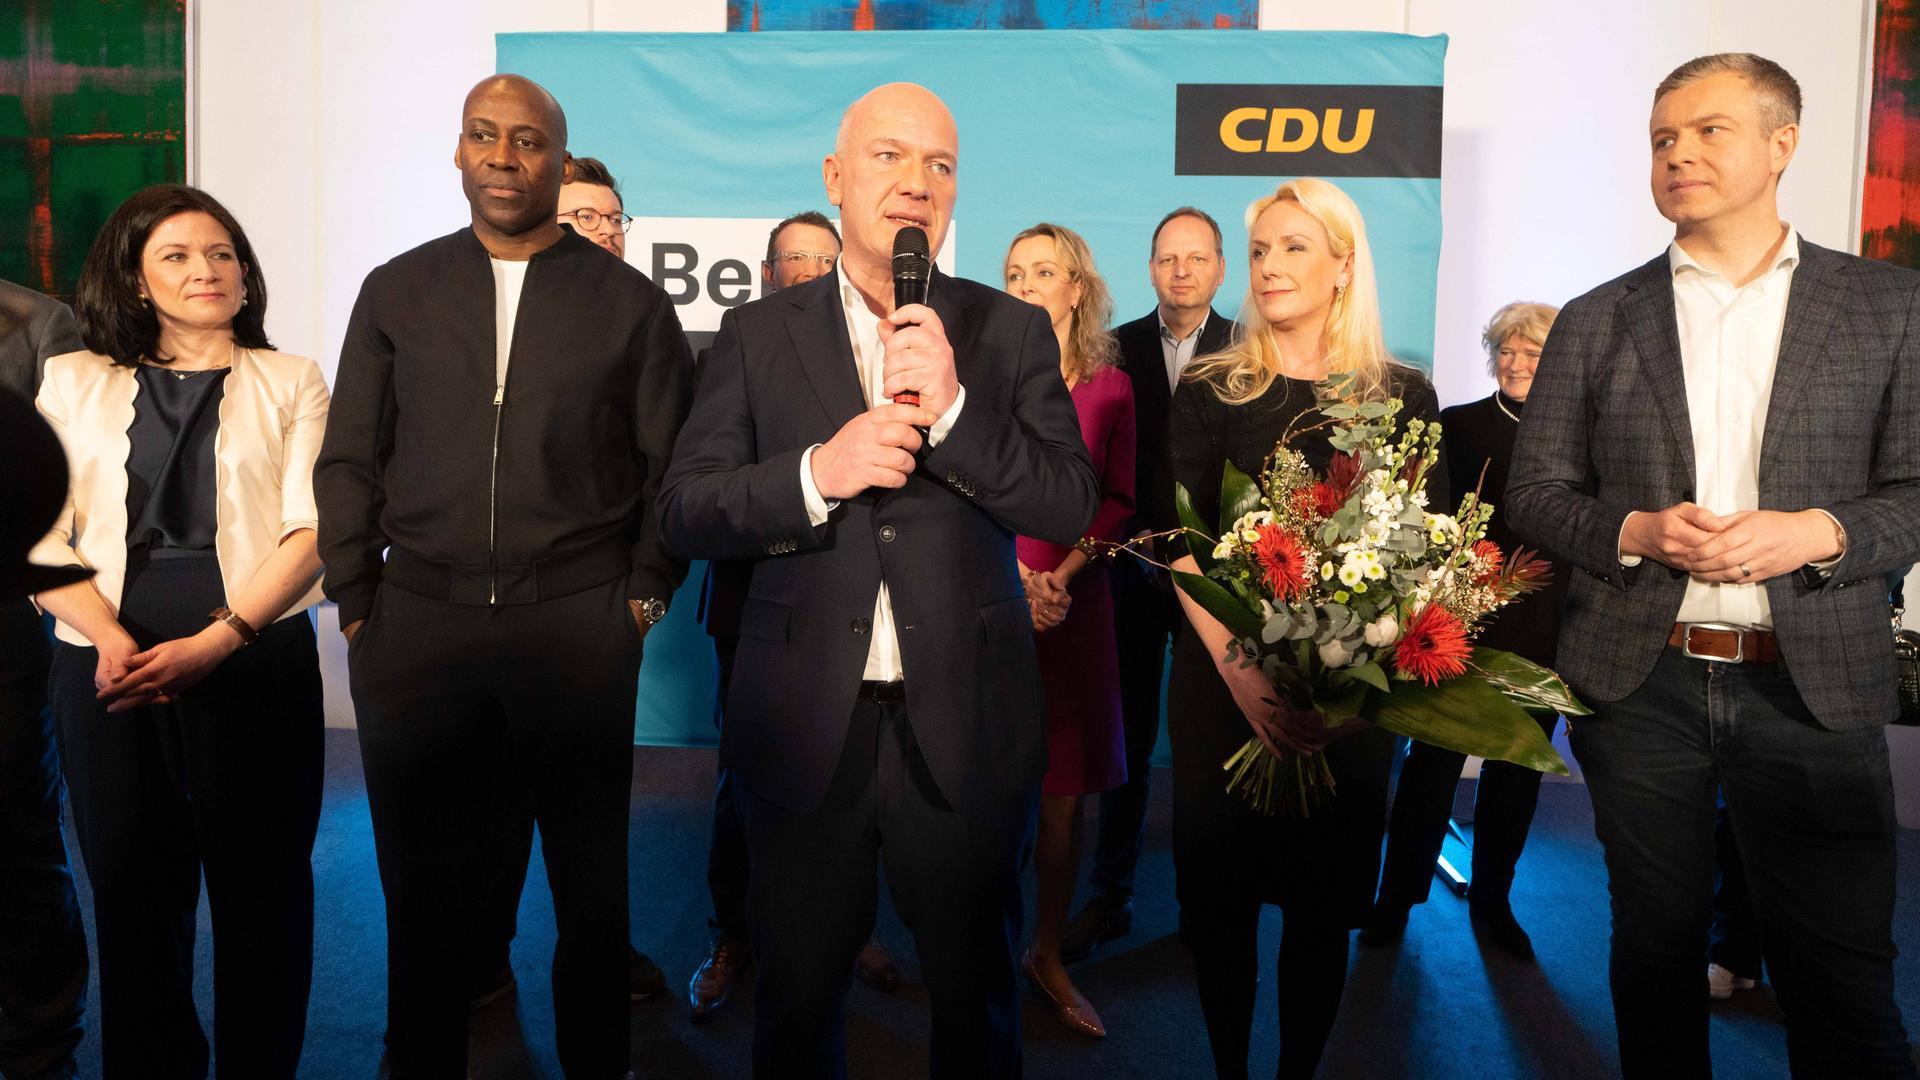 Wahlsieger Kai Wegner (CDU) bedankt sich bei Anhängern und Parteifreunden.